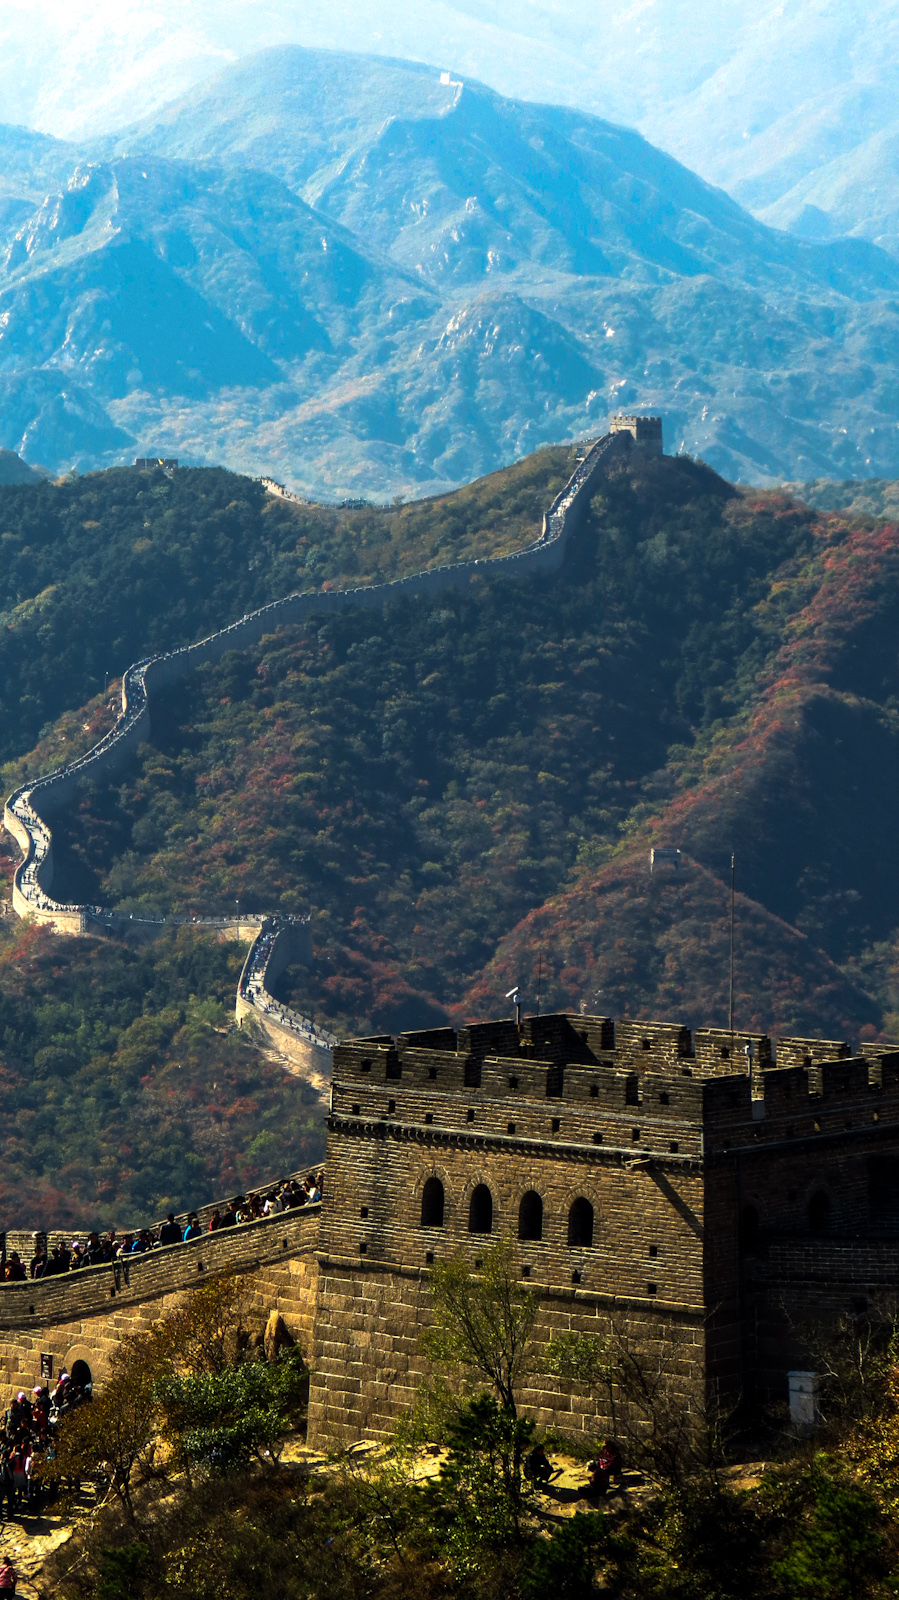 great-wall-of-china-badaling-watch-tower